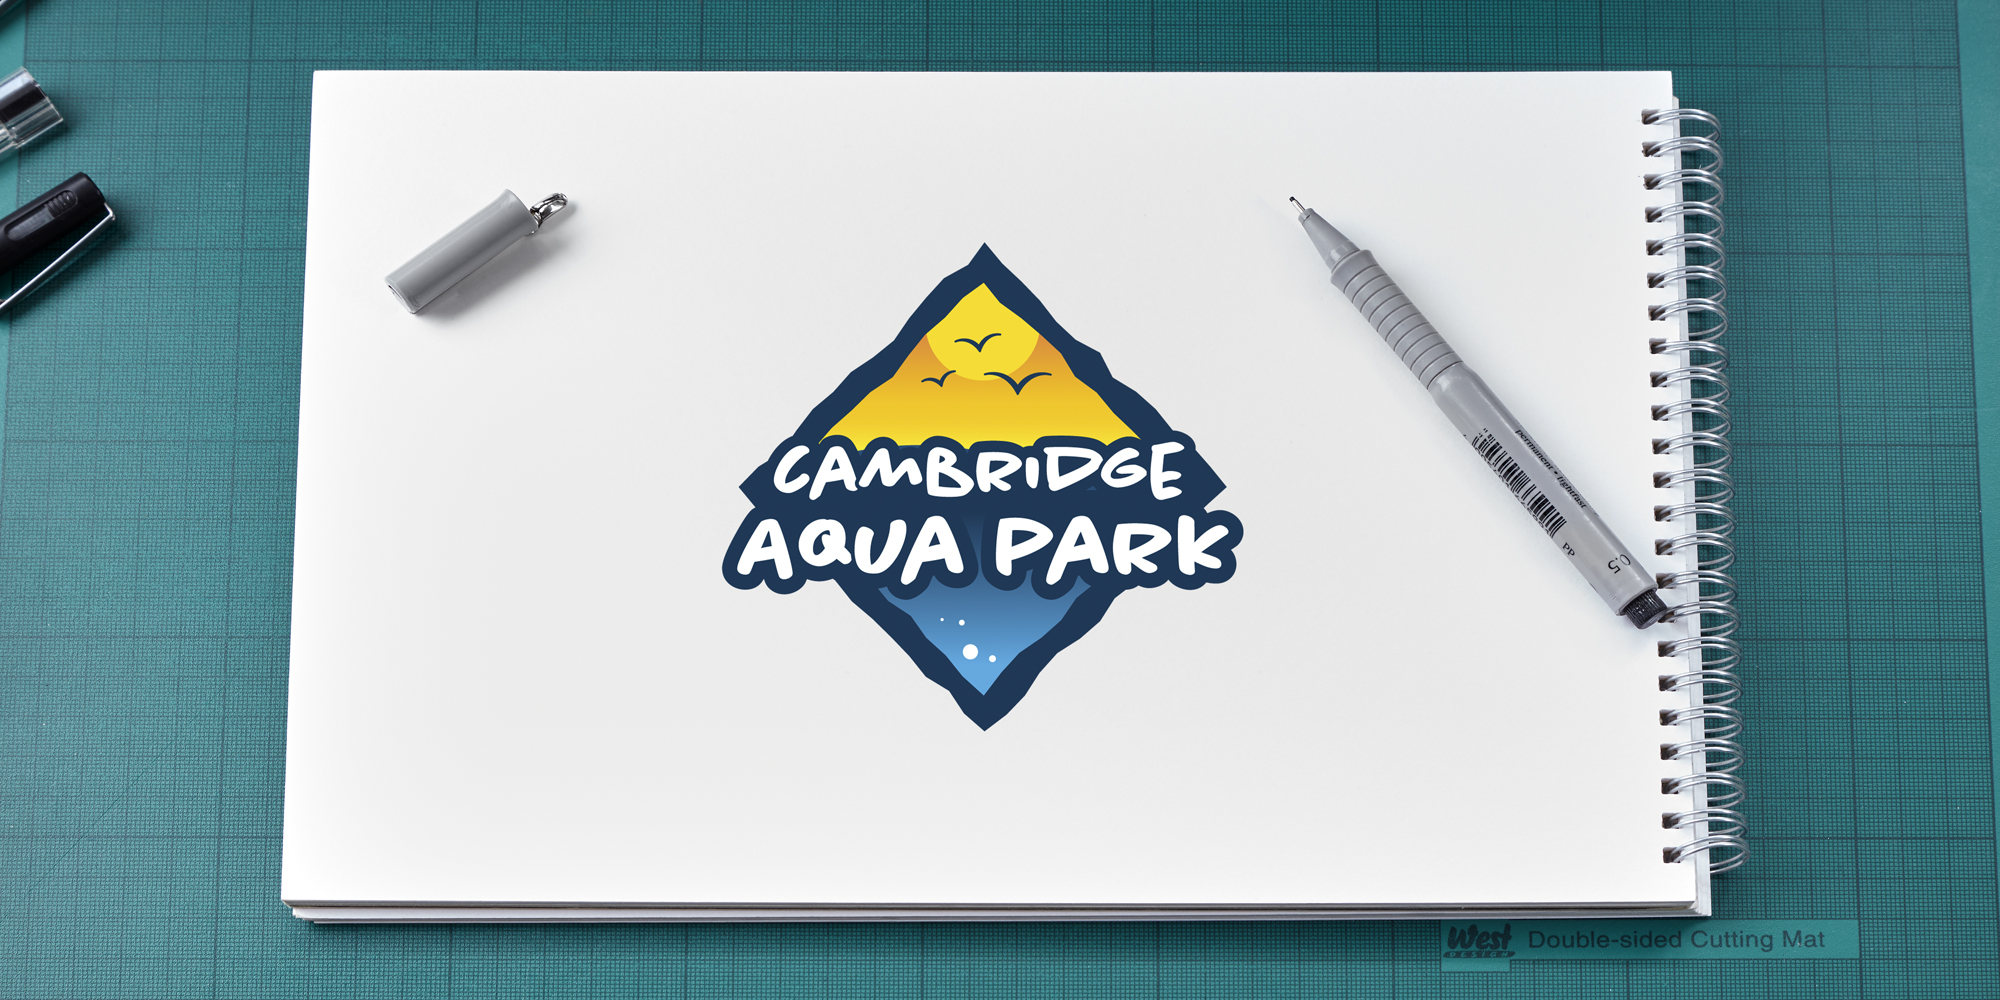 Cambridge Aqua Park logo